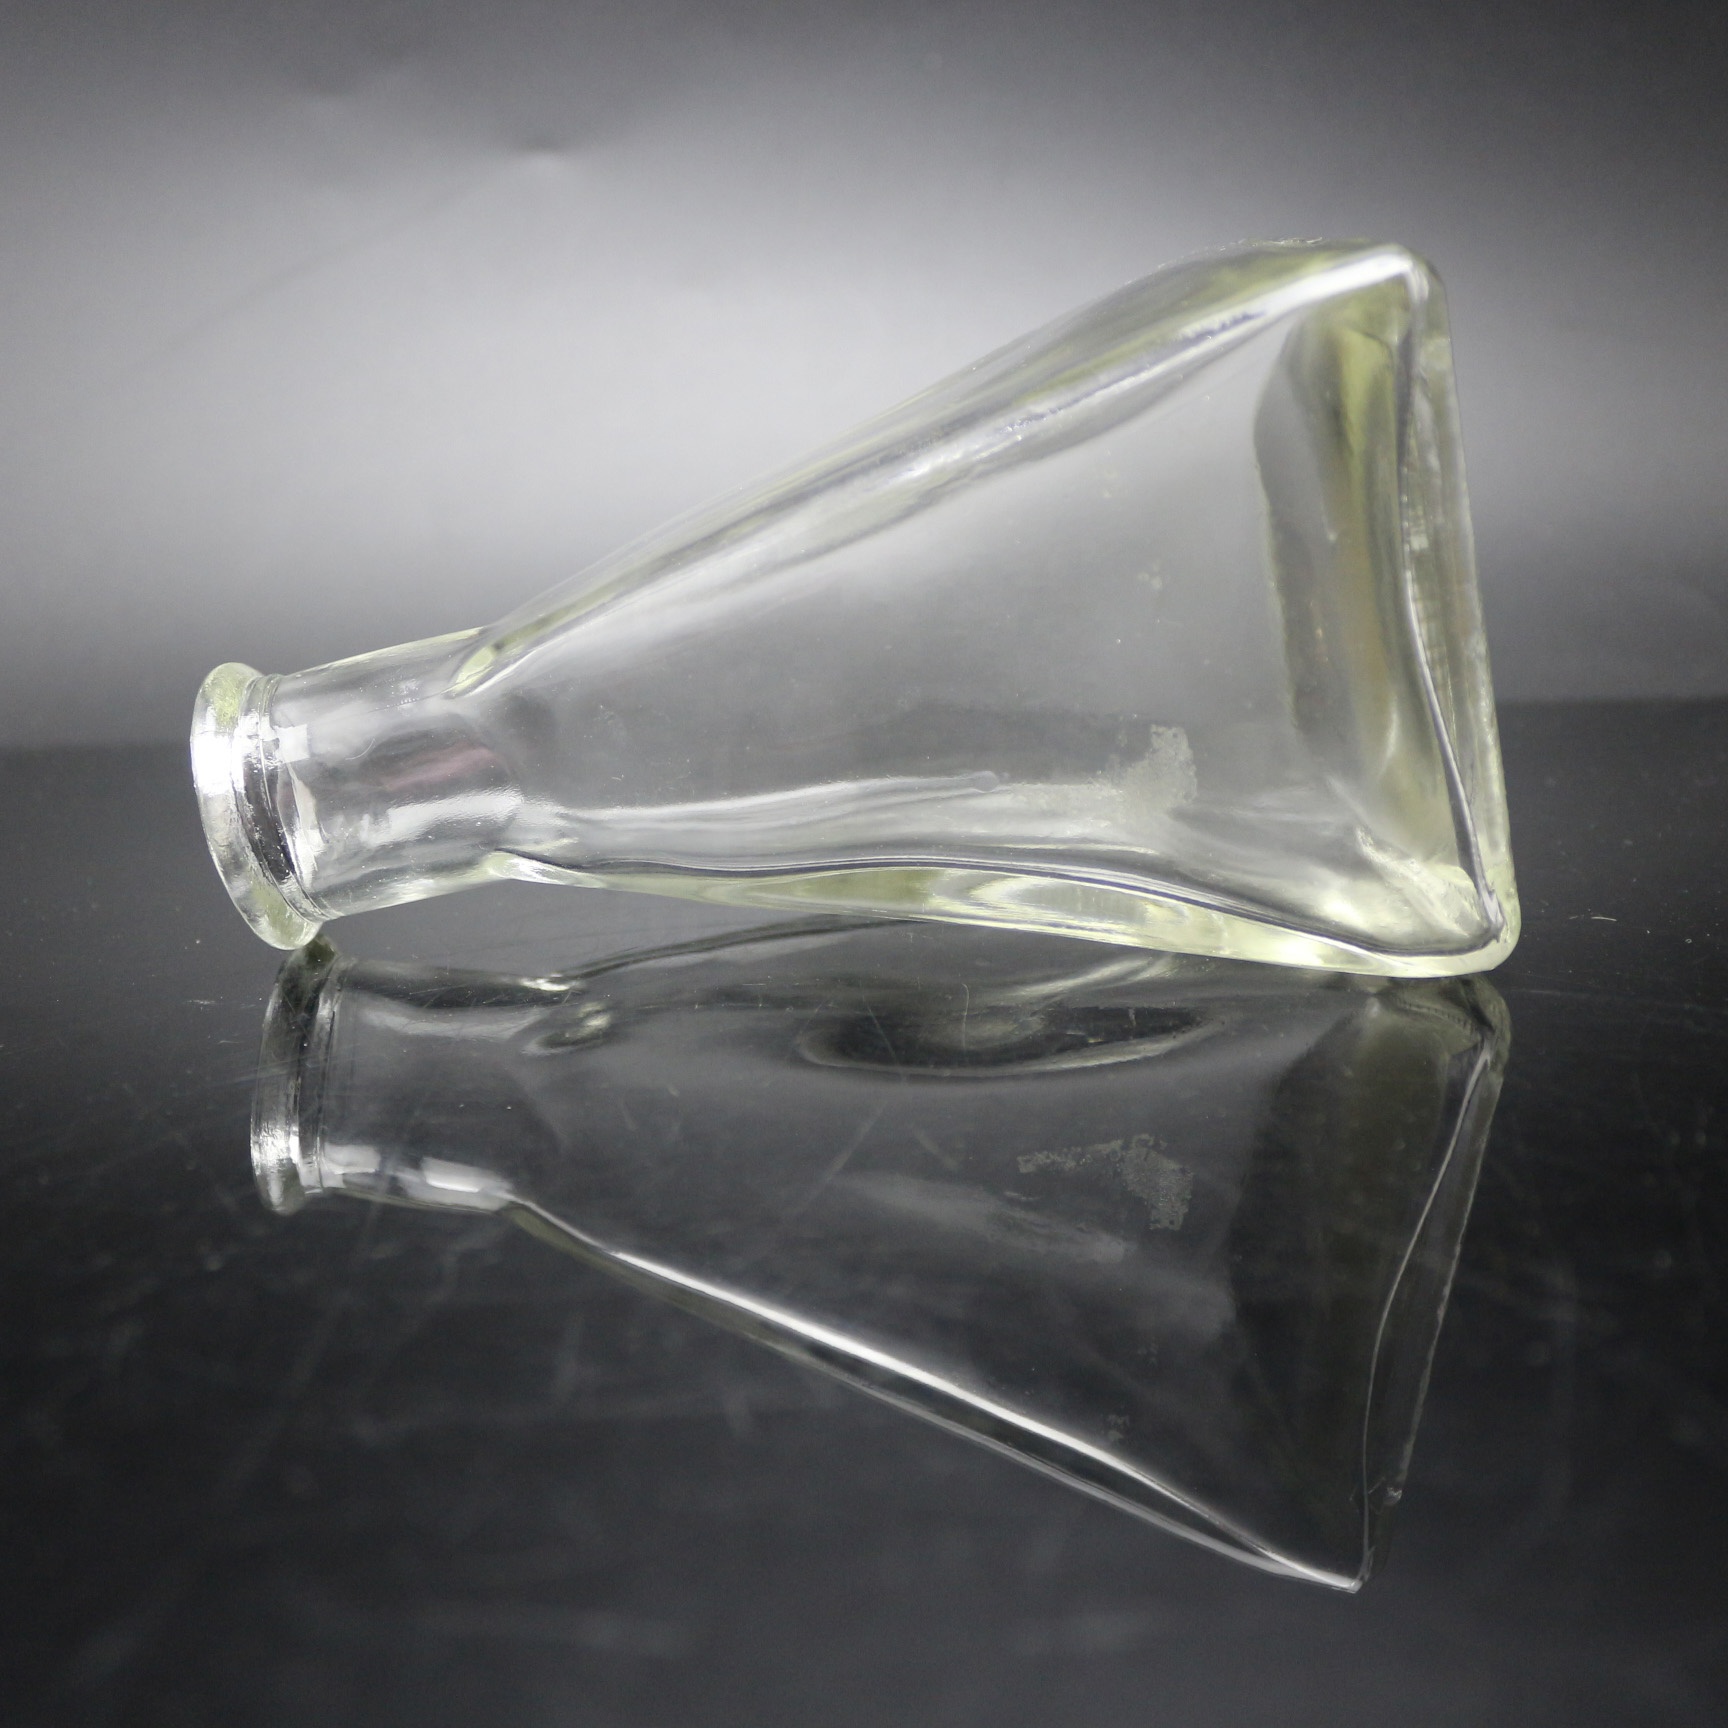 Koku kamış yağ difüzör piramit dekoratif cam şişe piramit şeklindeki cam şişeler